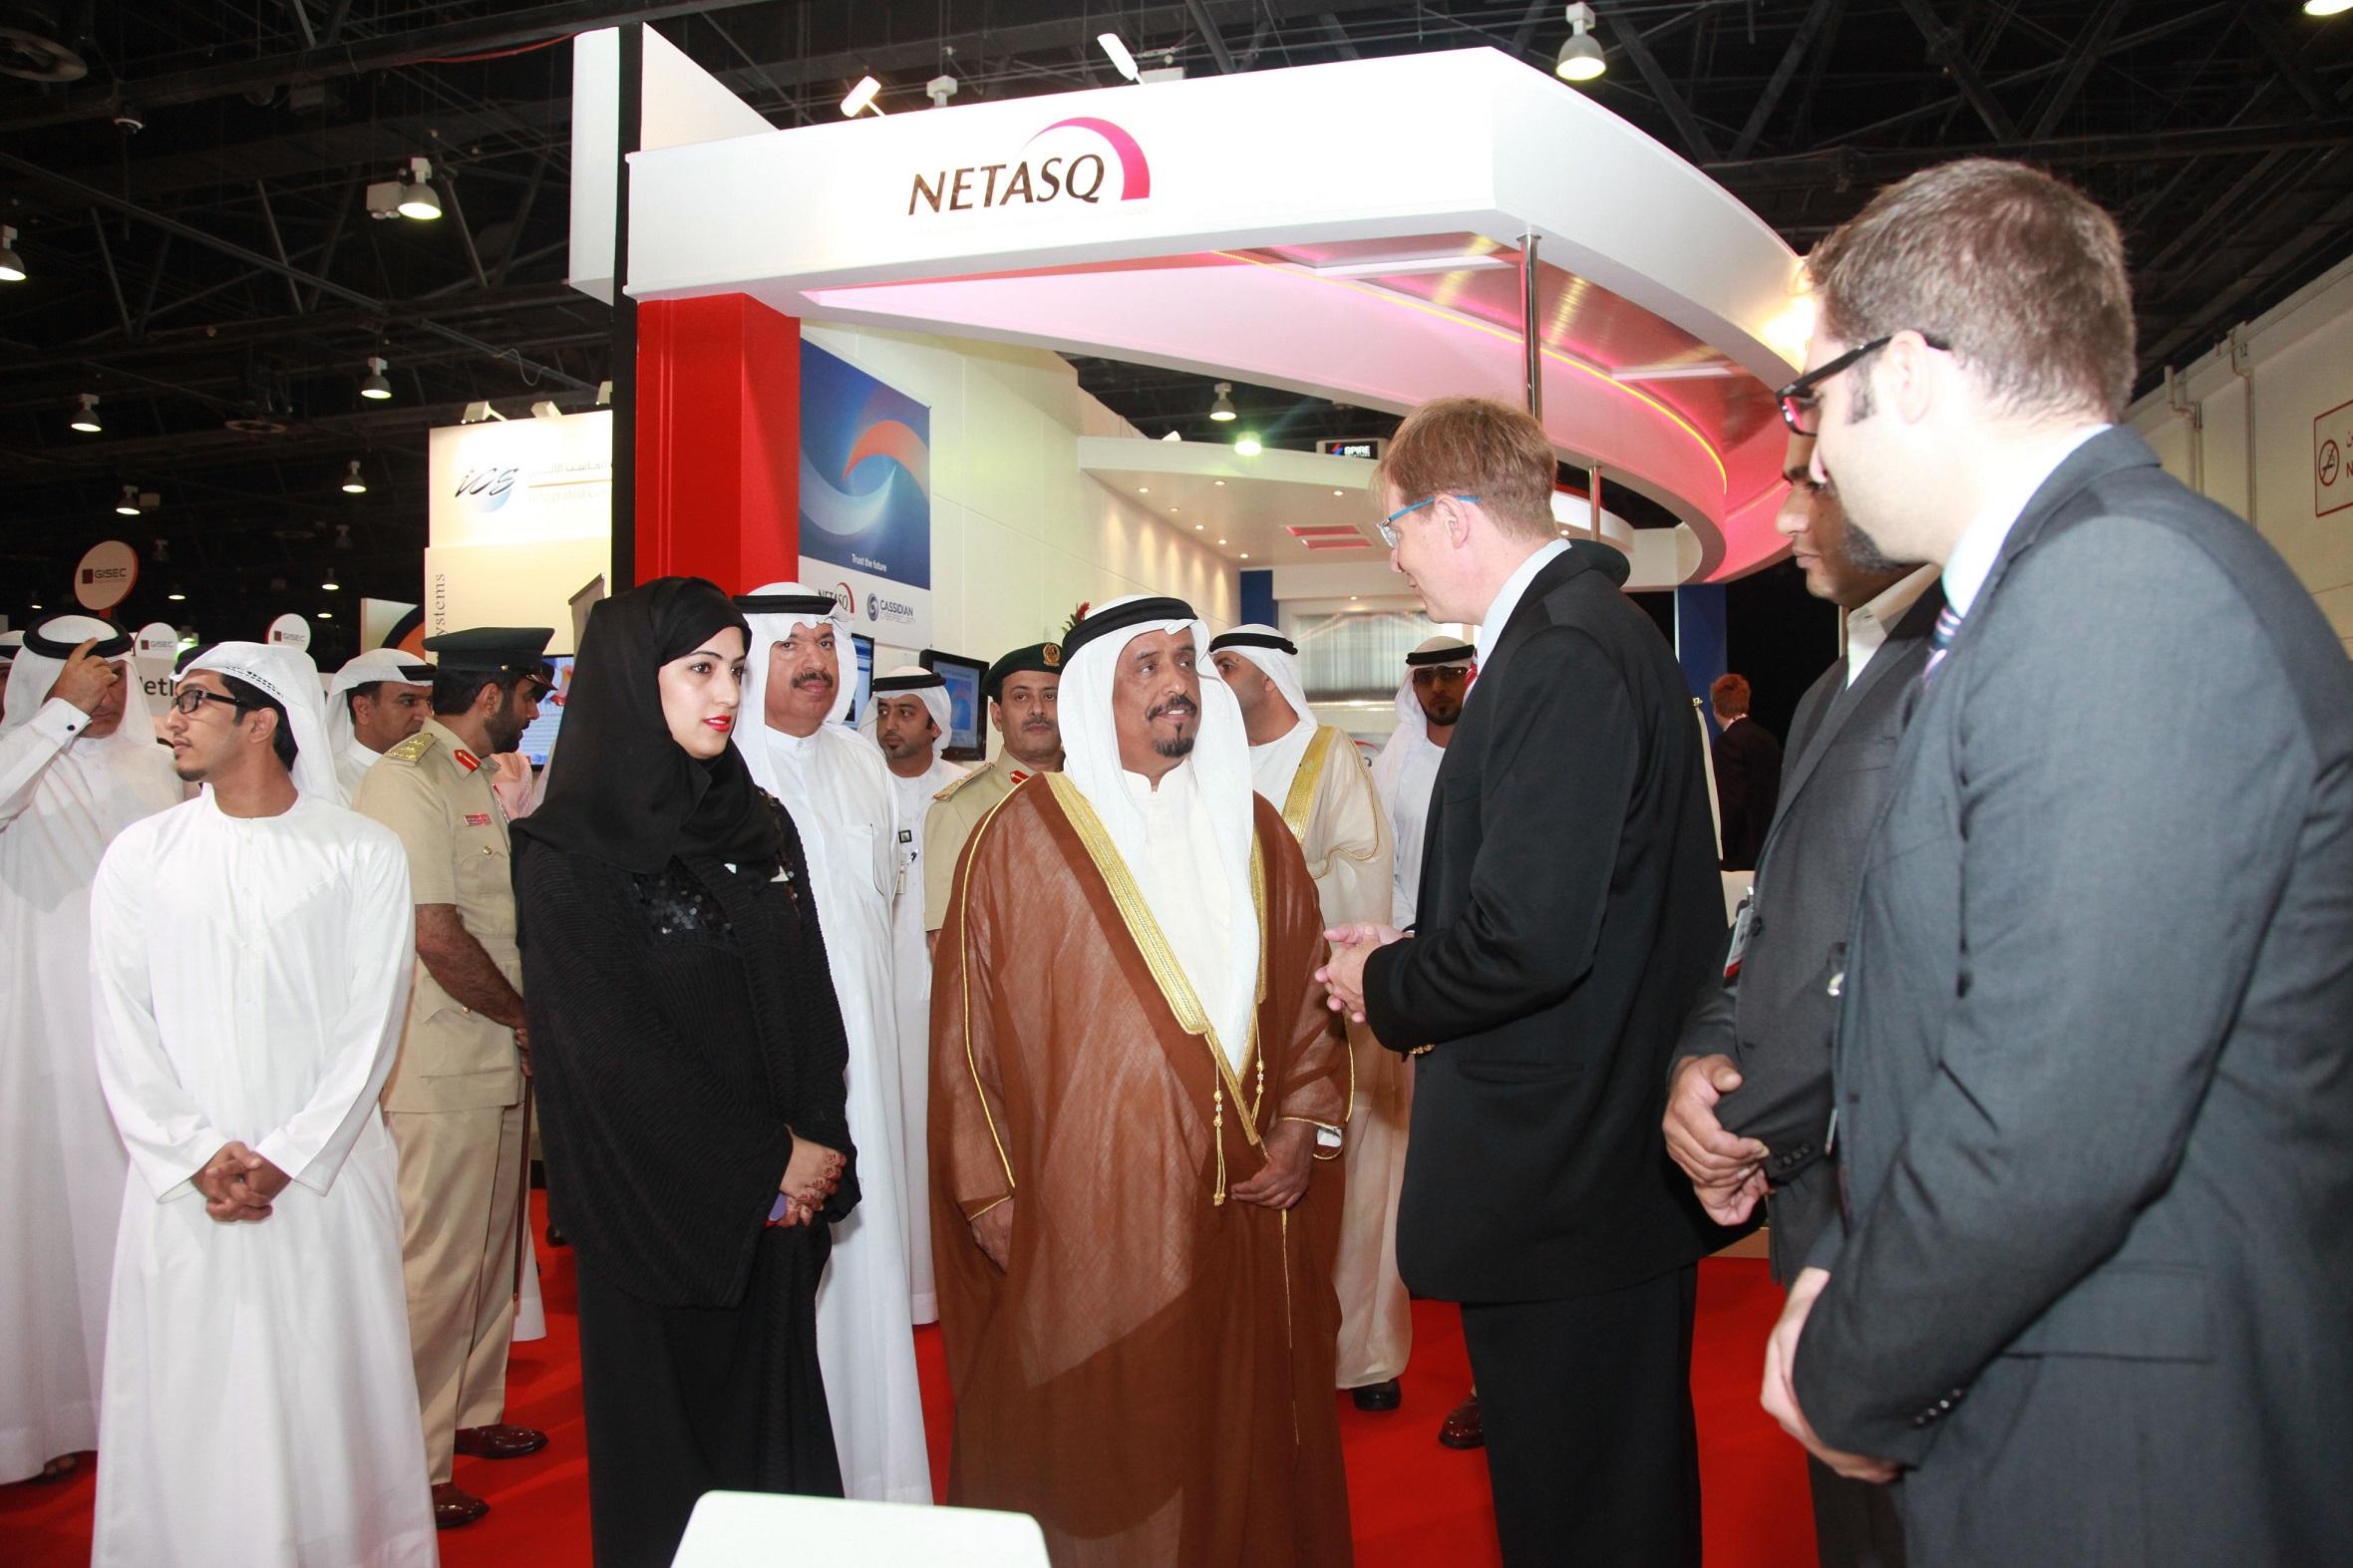 انطلاق فعاليات الدورة الأولى من "معرض ومؤتمر الخليج لأمن المعلومات" في دبي